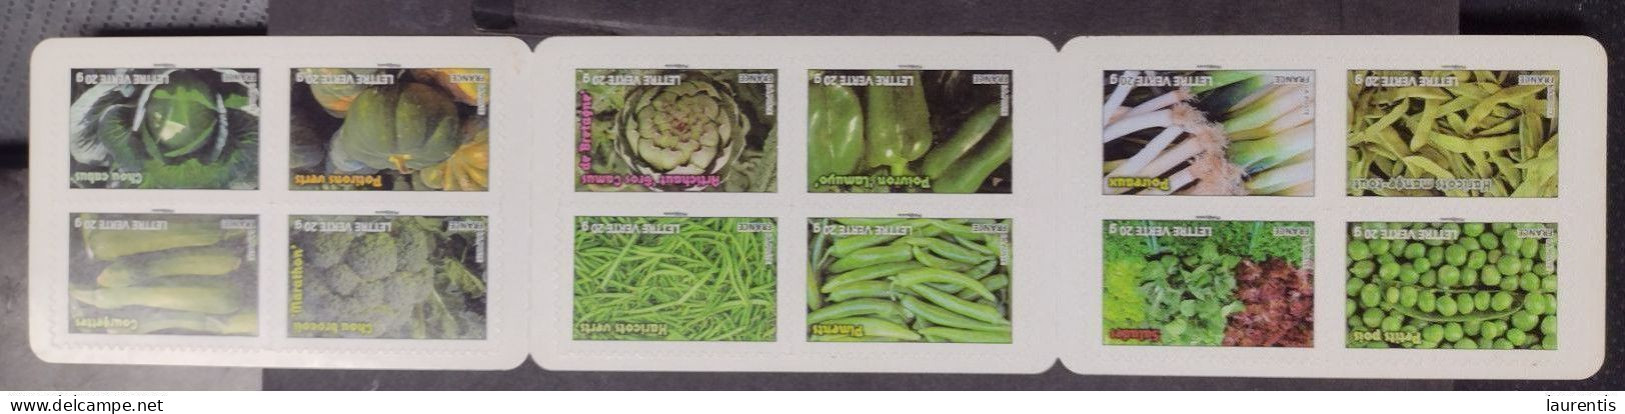 D7028  Vegetables - Foods - France MNH - Face Value 13€92 - 1€16 Each - 12,75 - Vegetables